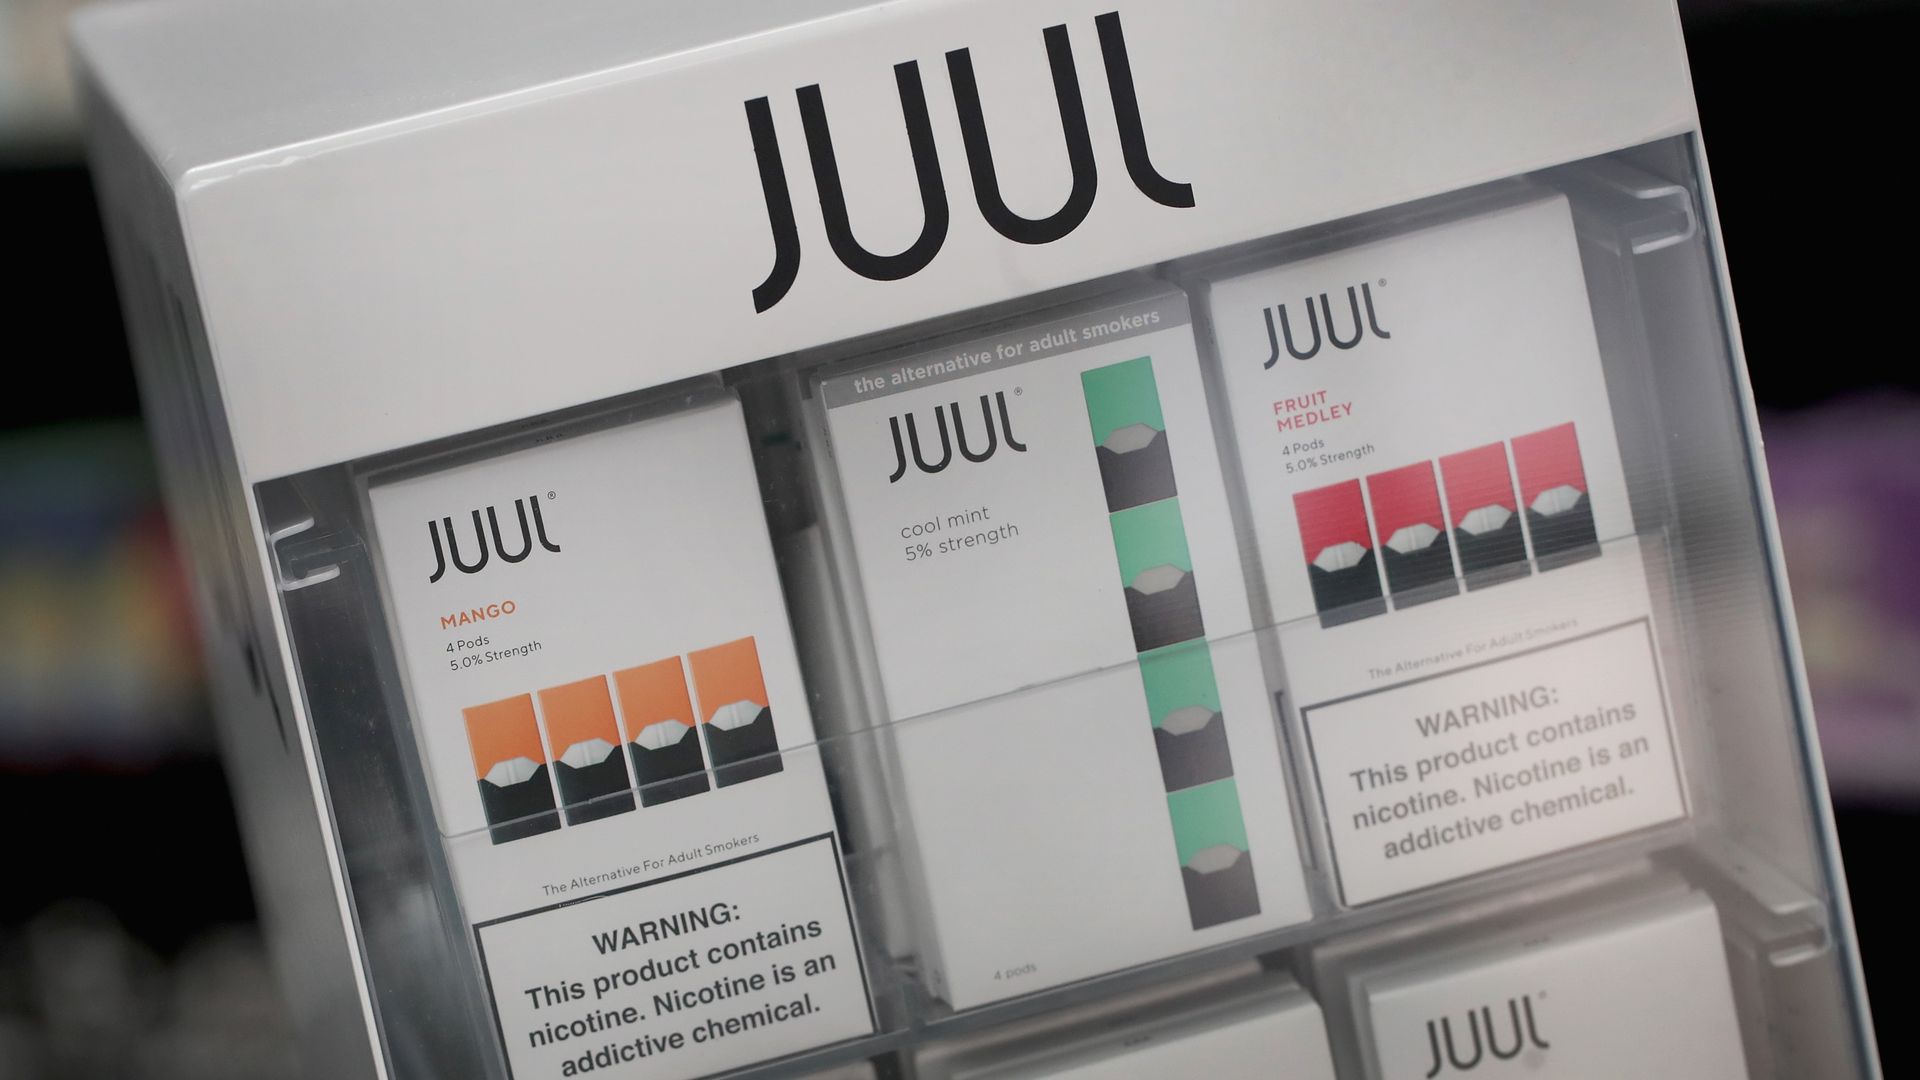 A display of JuUl cartridges.